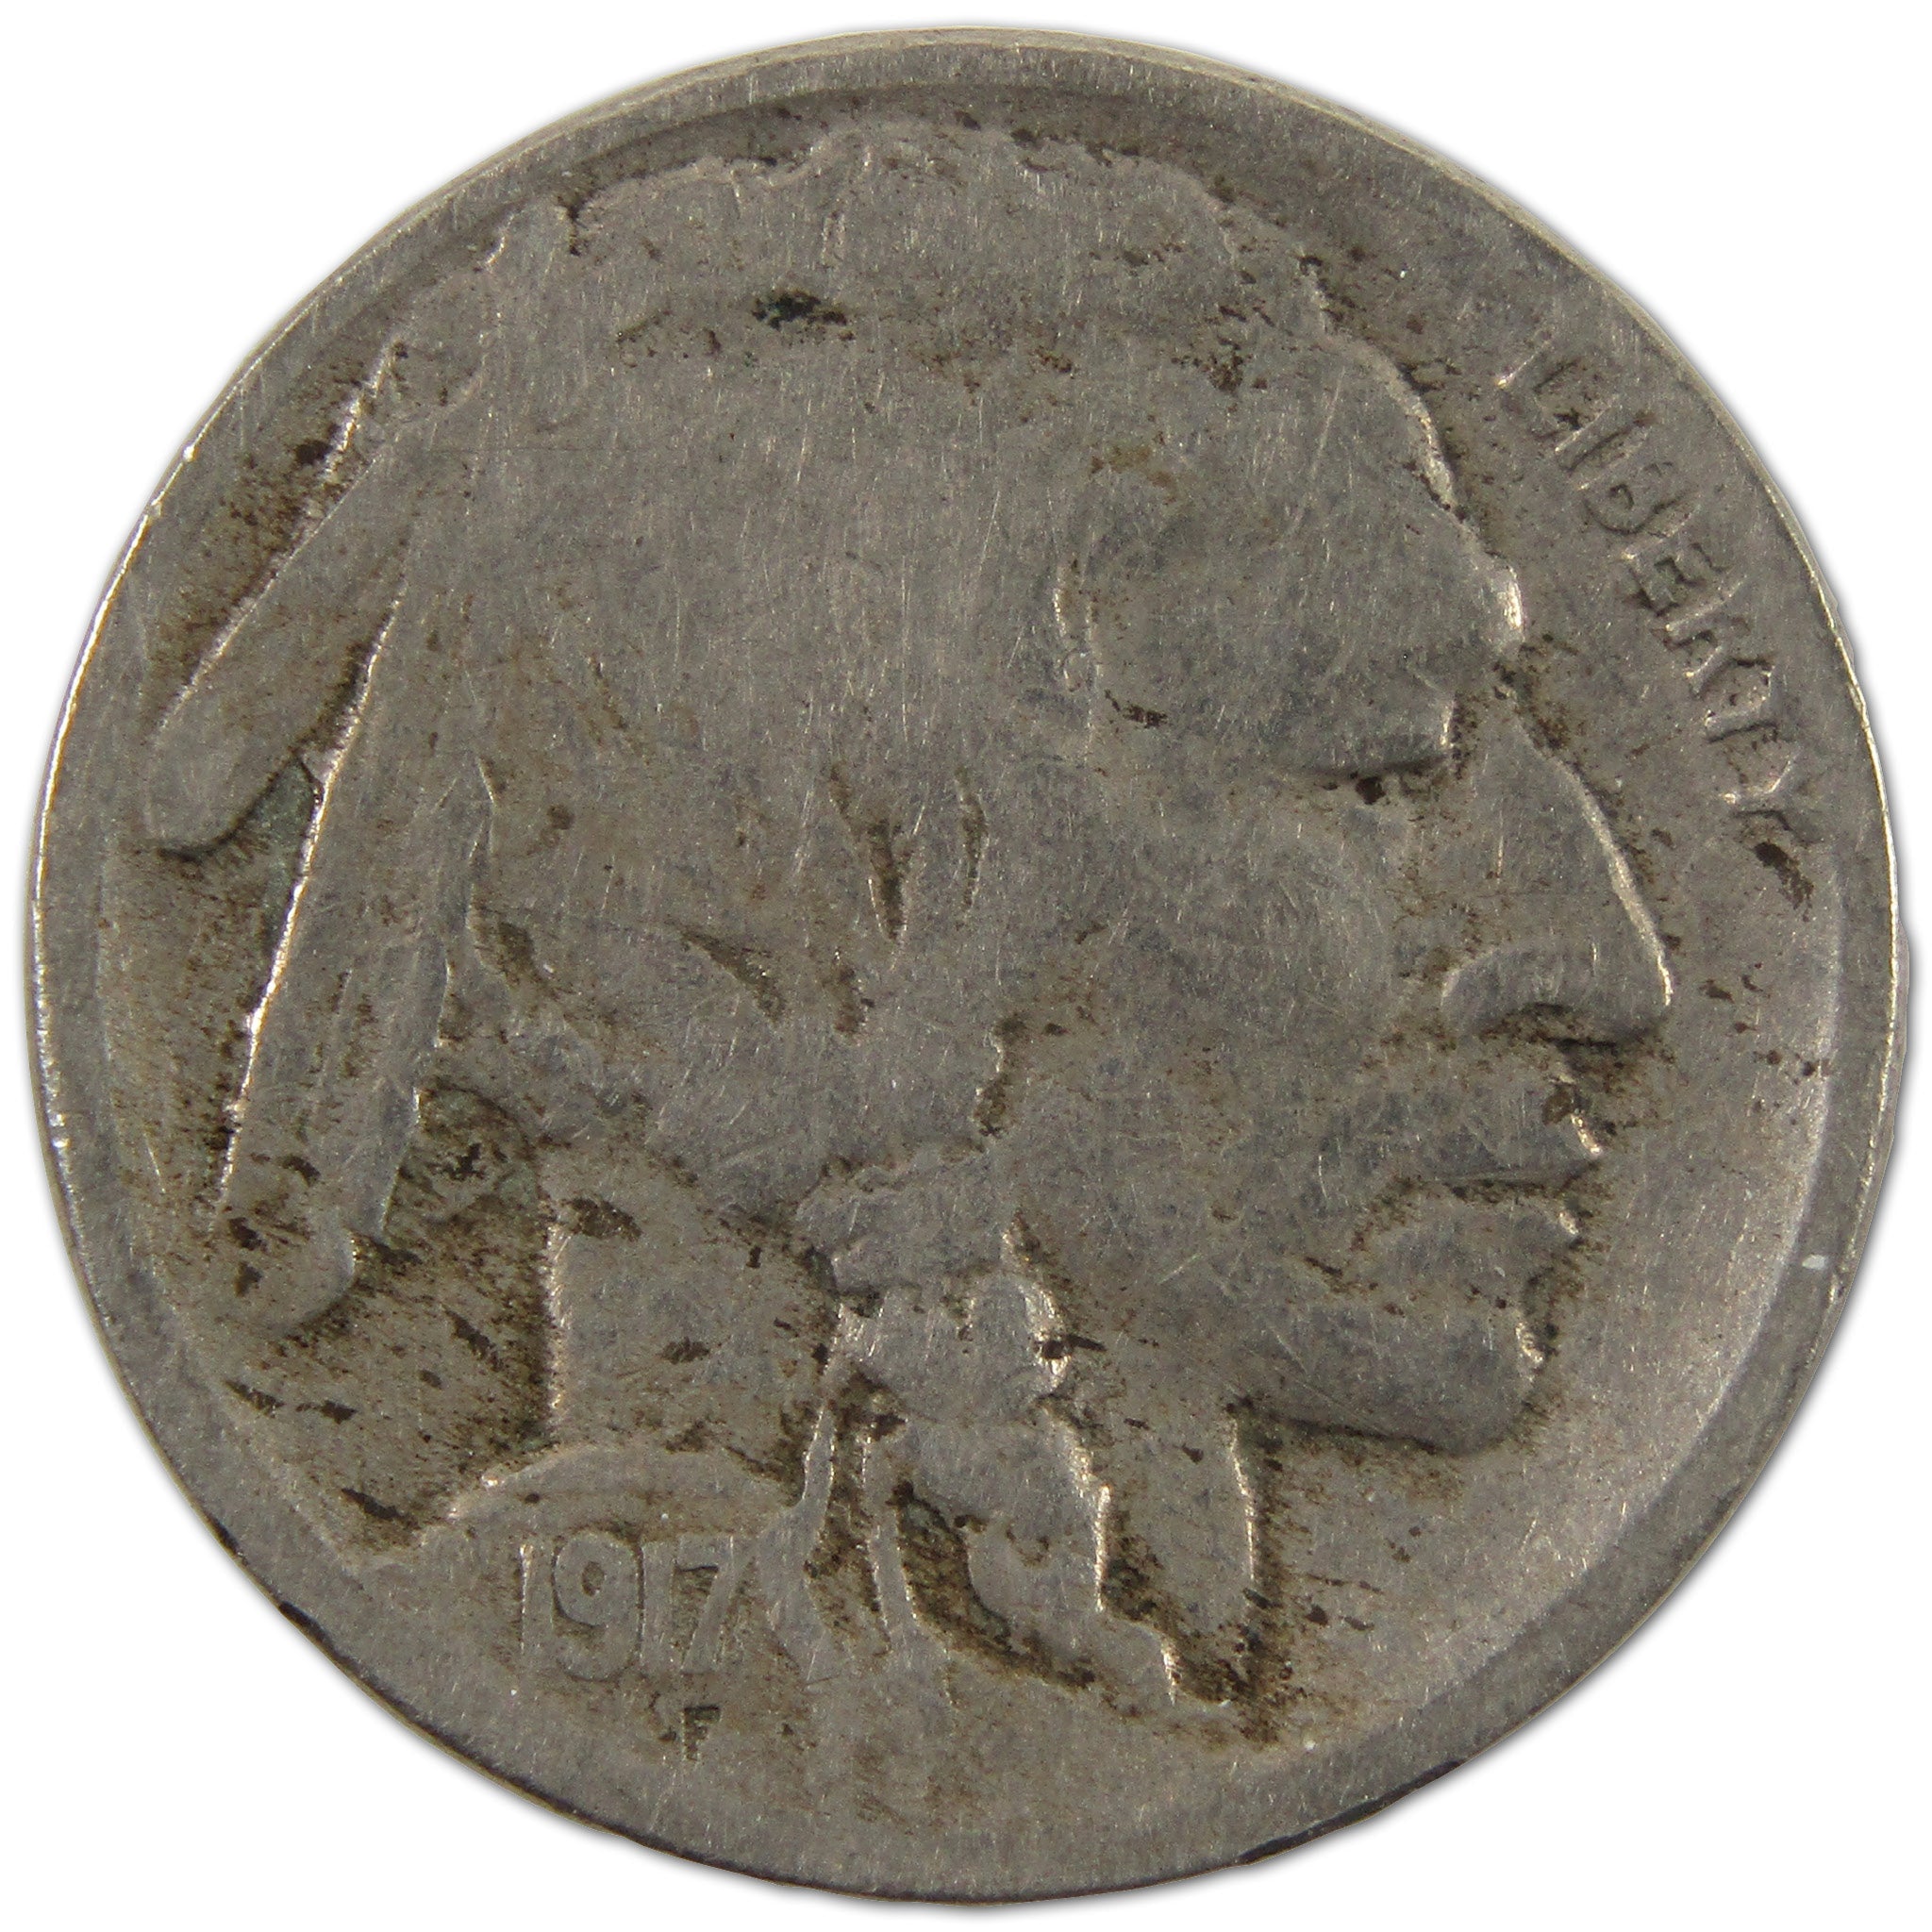 1917 S Indian Head Buffalo Nickel VG Very Good 5c Coin SKU:I10604